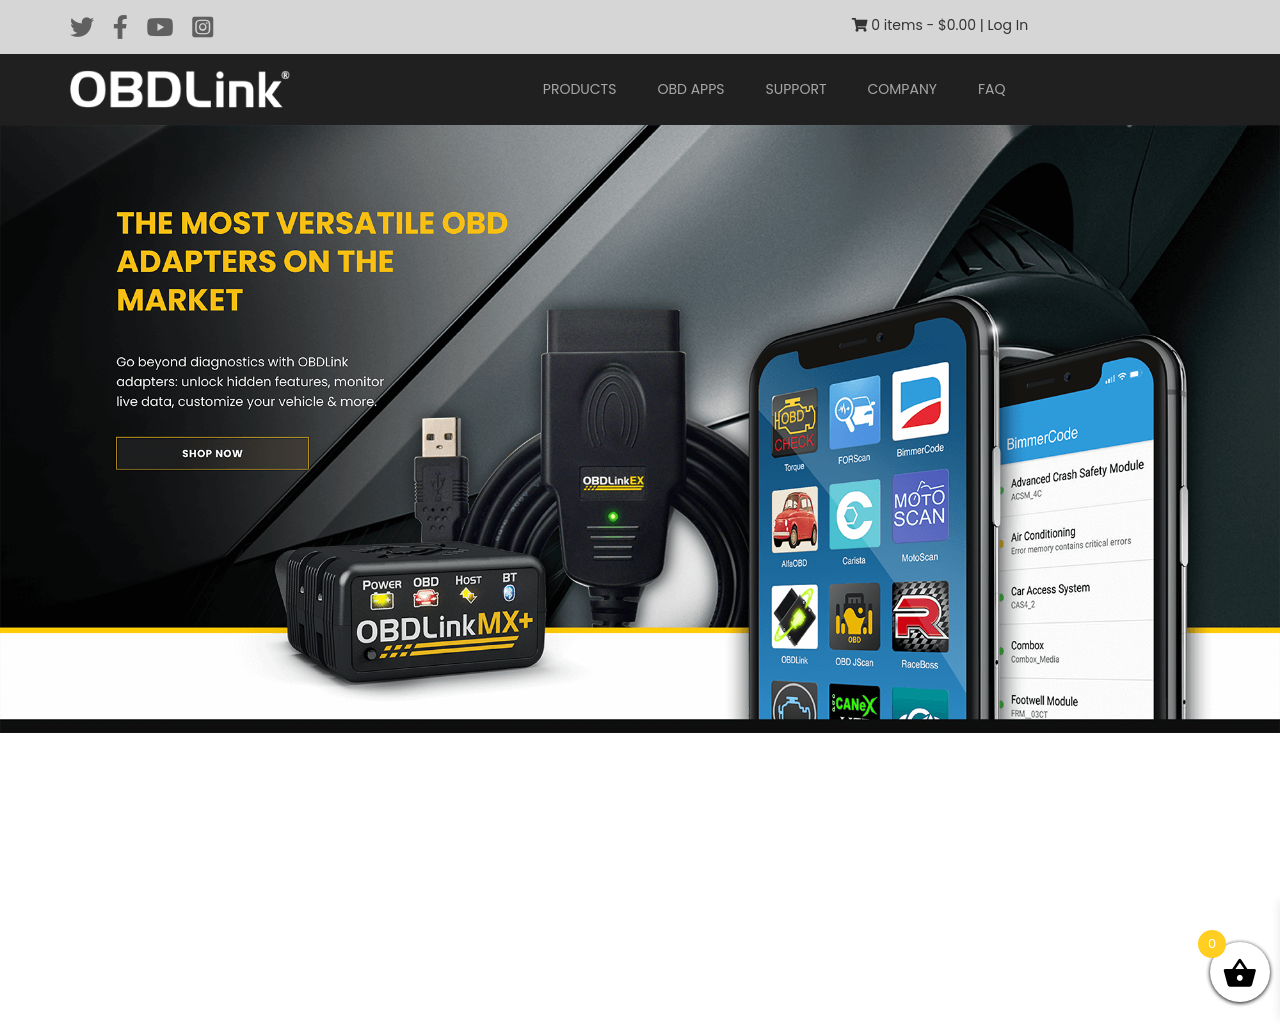 obdlink.com